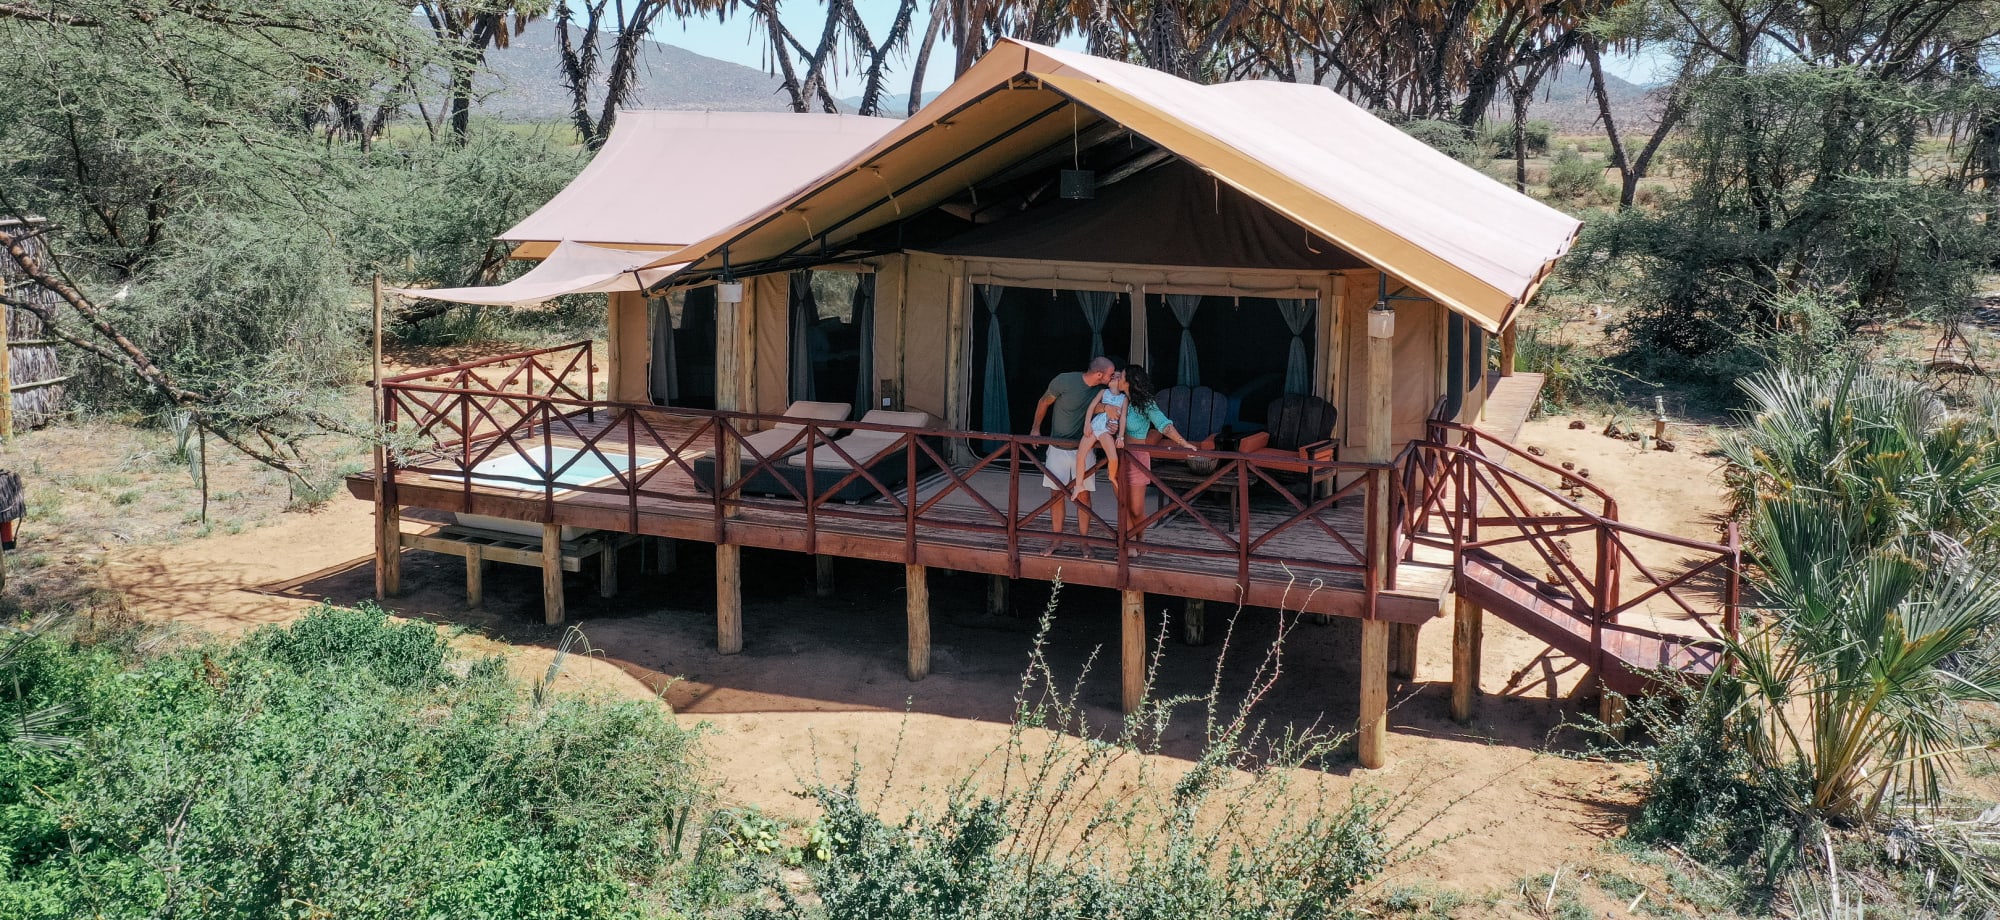 Elephant_Bedroom_Camp_Samburu_1_qmpobt-3